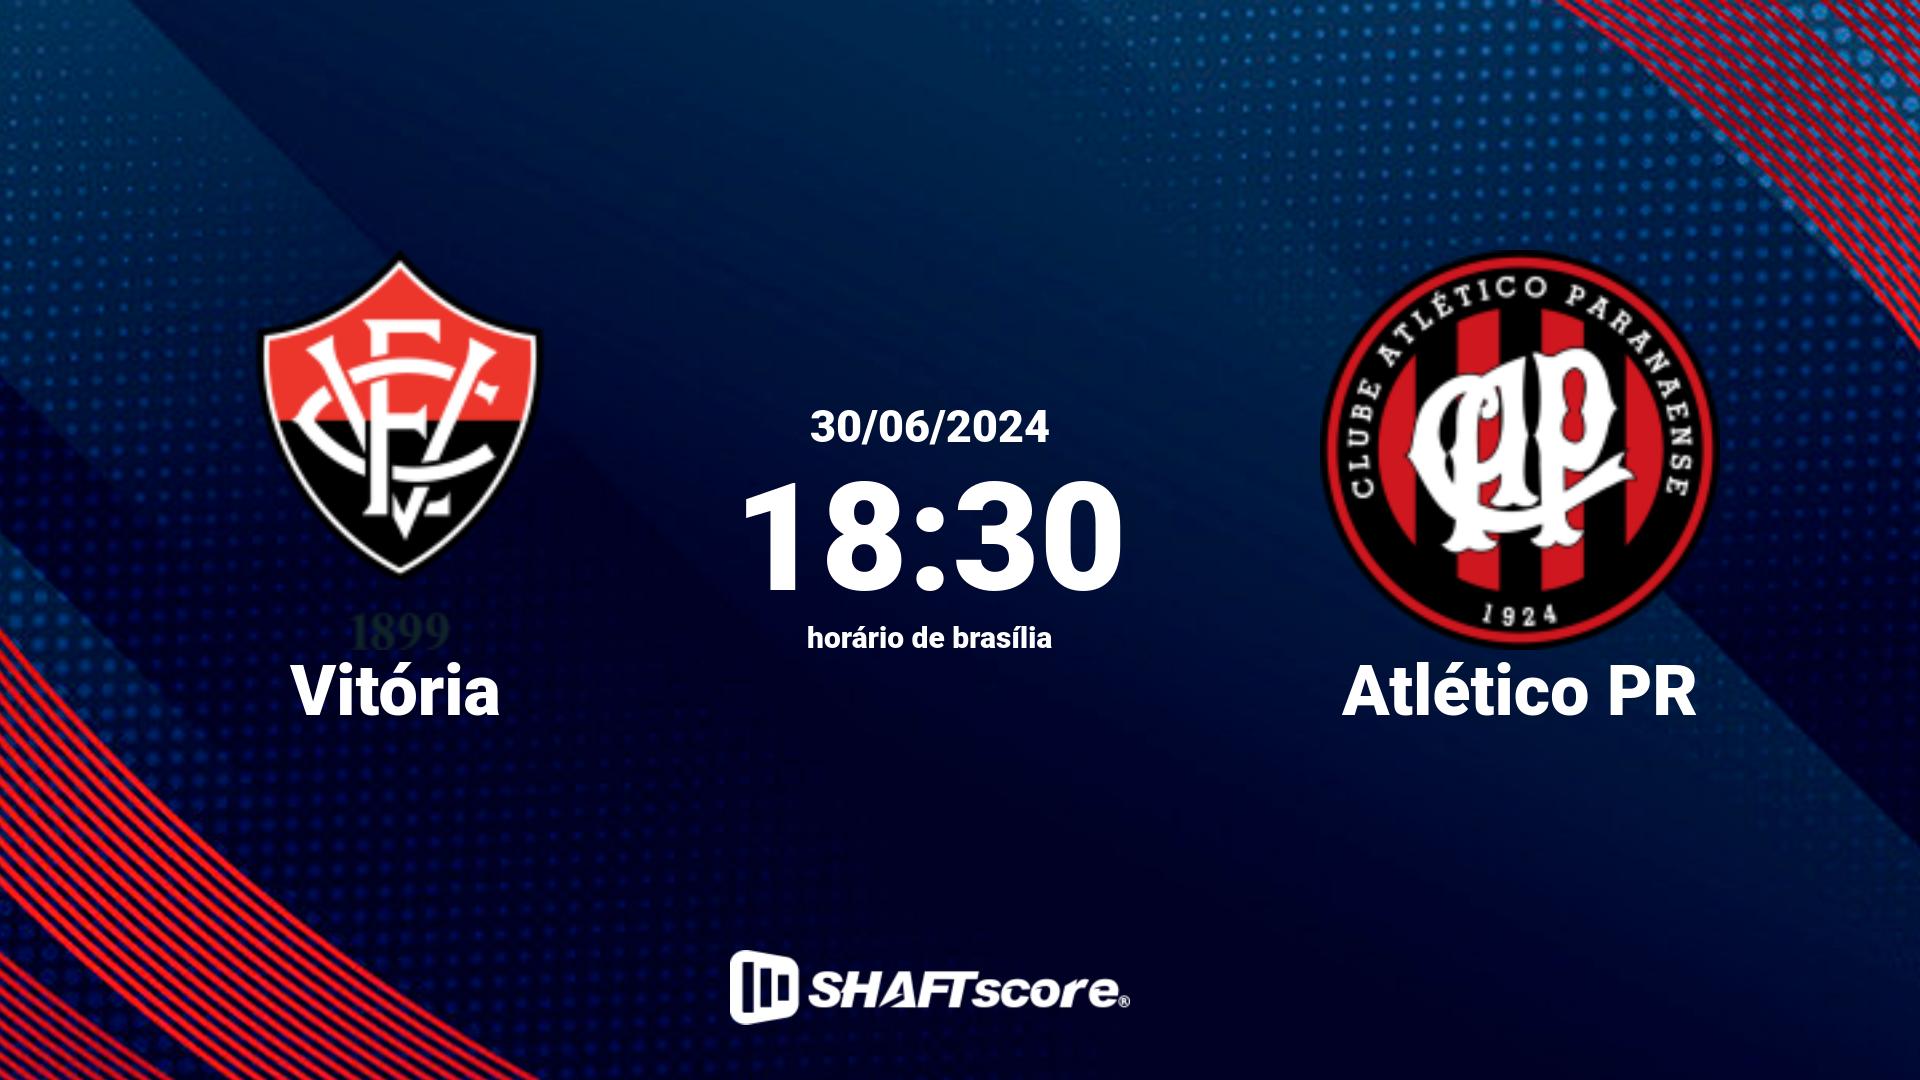 Estatísticas do jogo Vitória vs Atlético PR 30.06 18:30